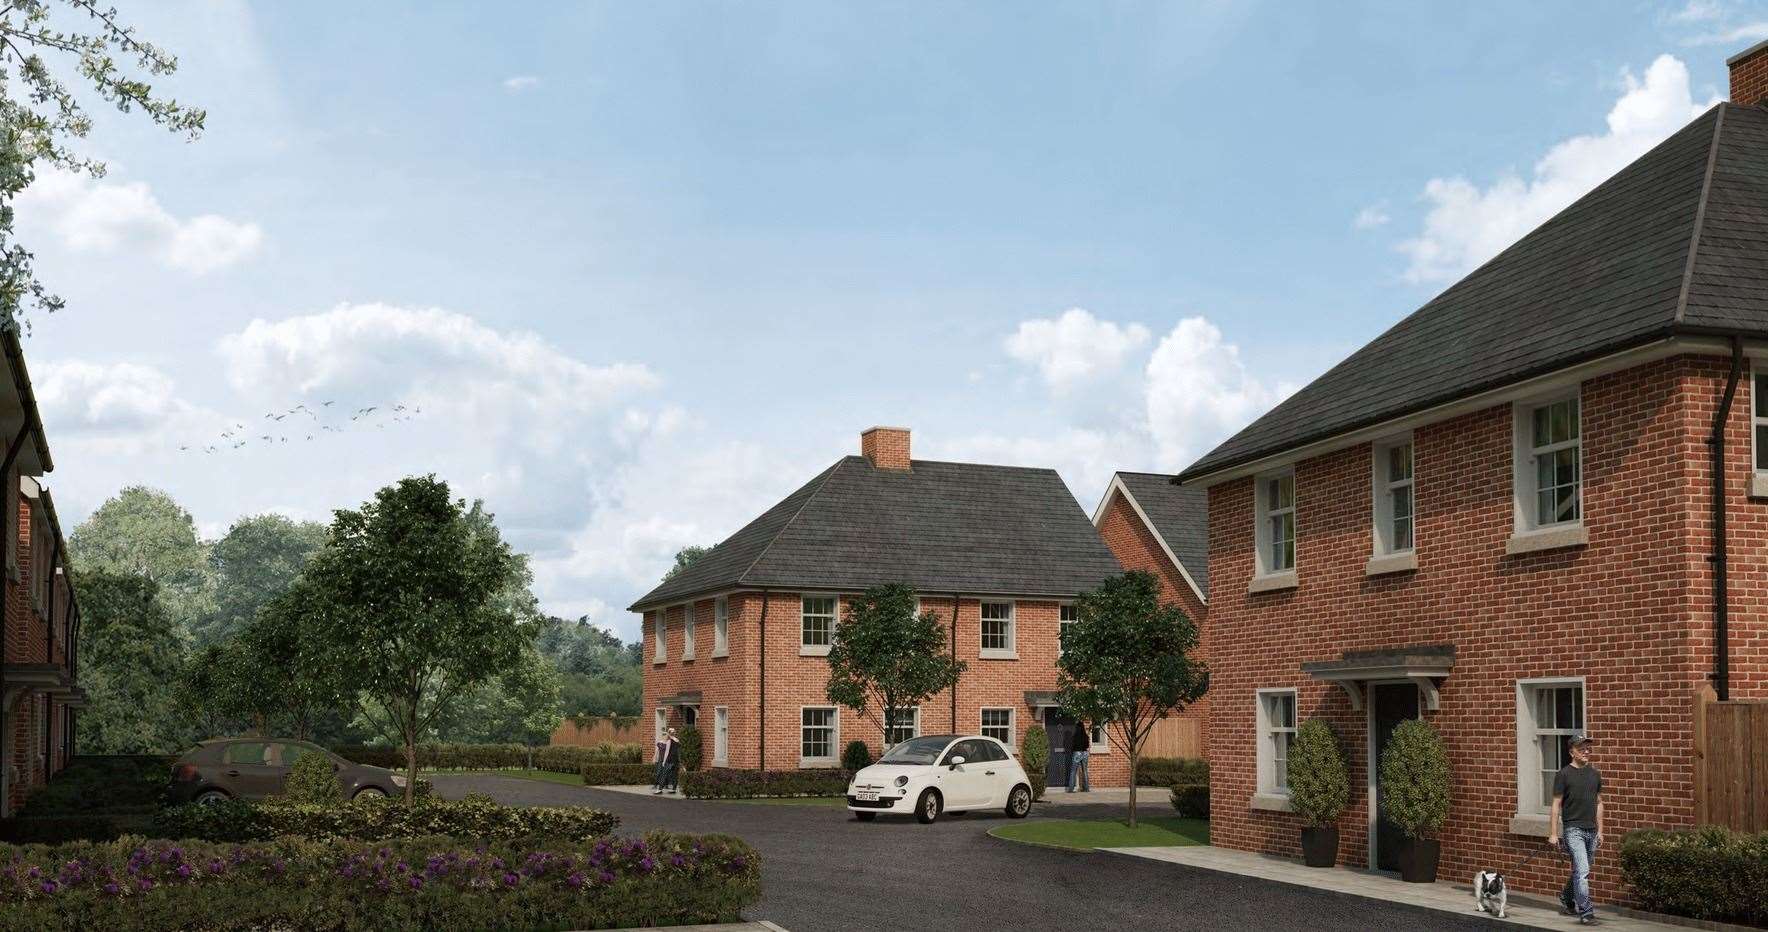 Pictures show Quinn Estates’ plans for new homes at Cottington Park near Deal